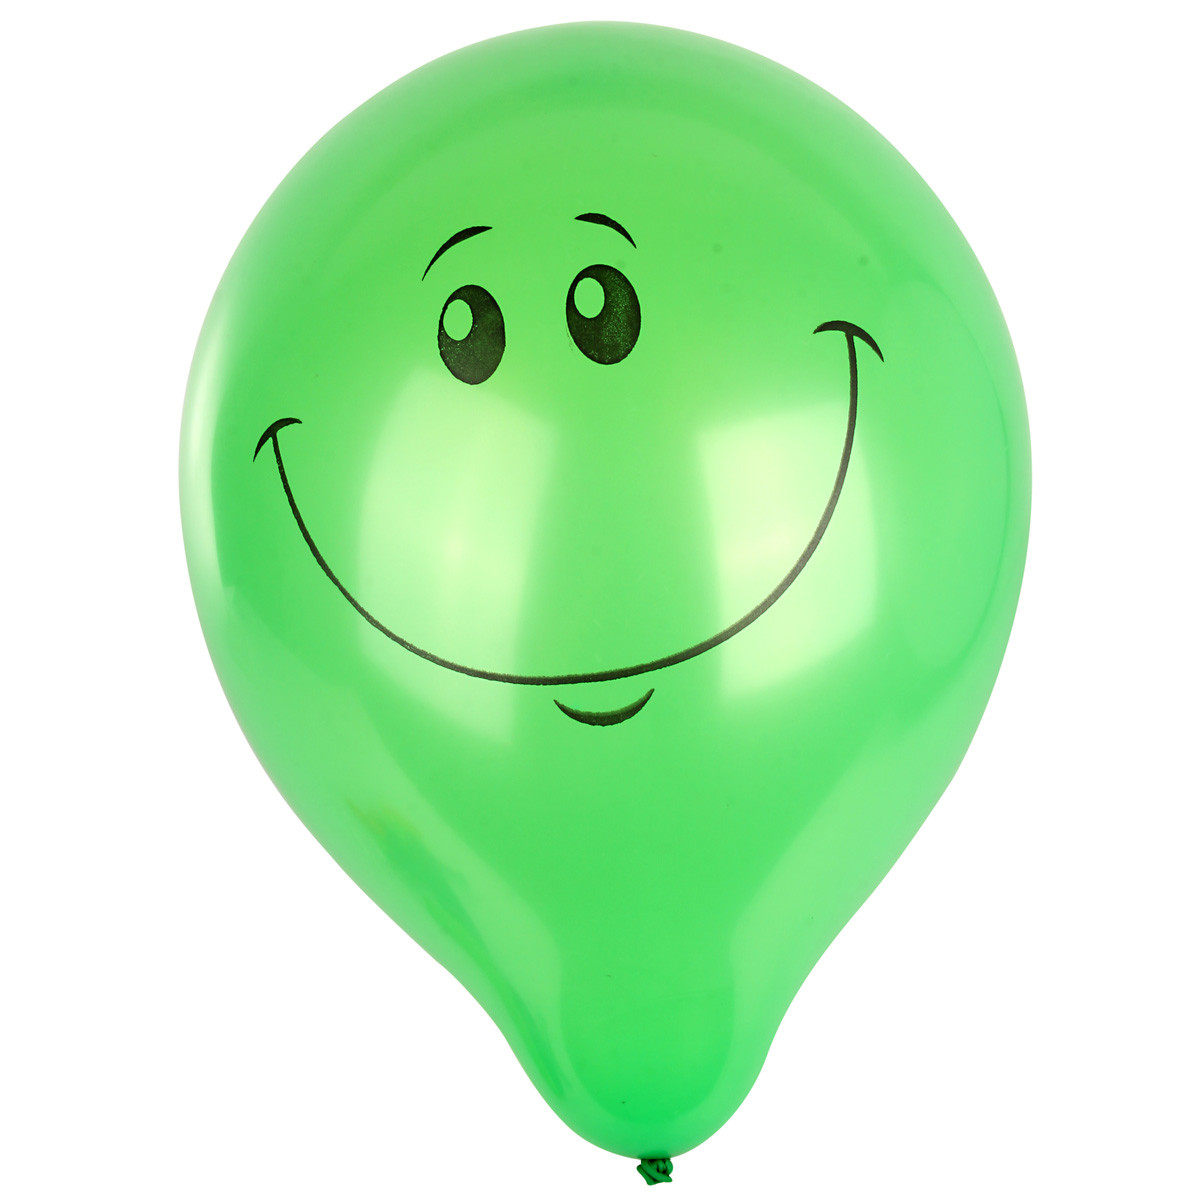 Веселые воздушные шары. Воздушный шарик. Воздушный шарик с улыбкой. Зеленый воздушный шарик. Веселые воздушные шарики.